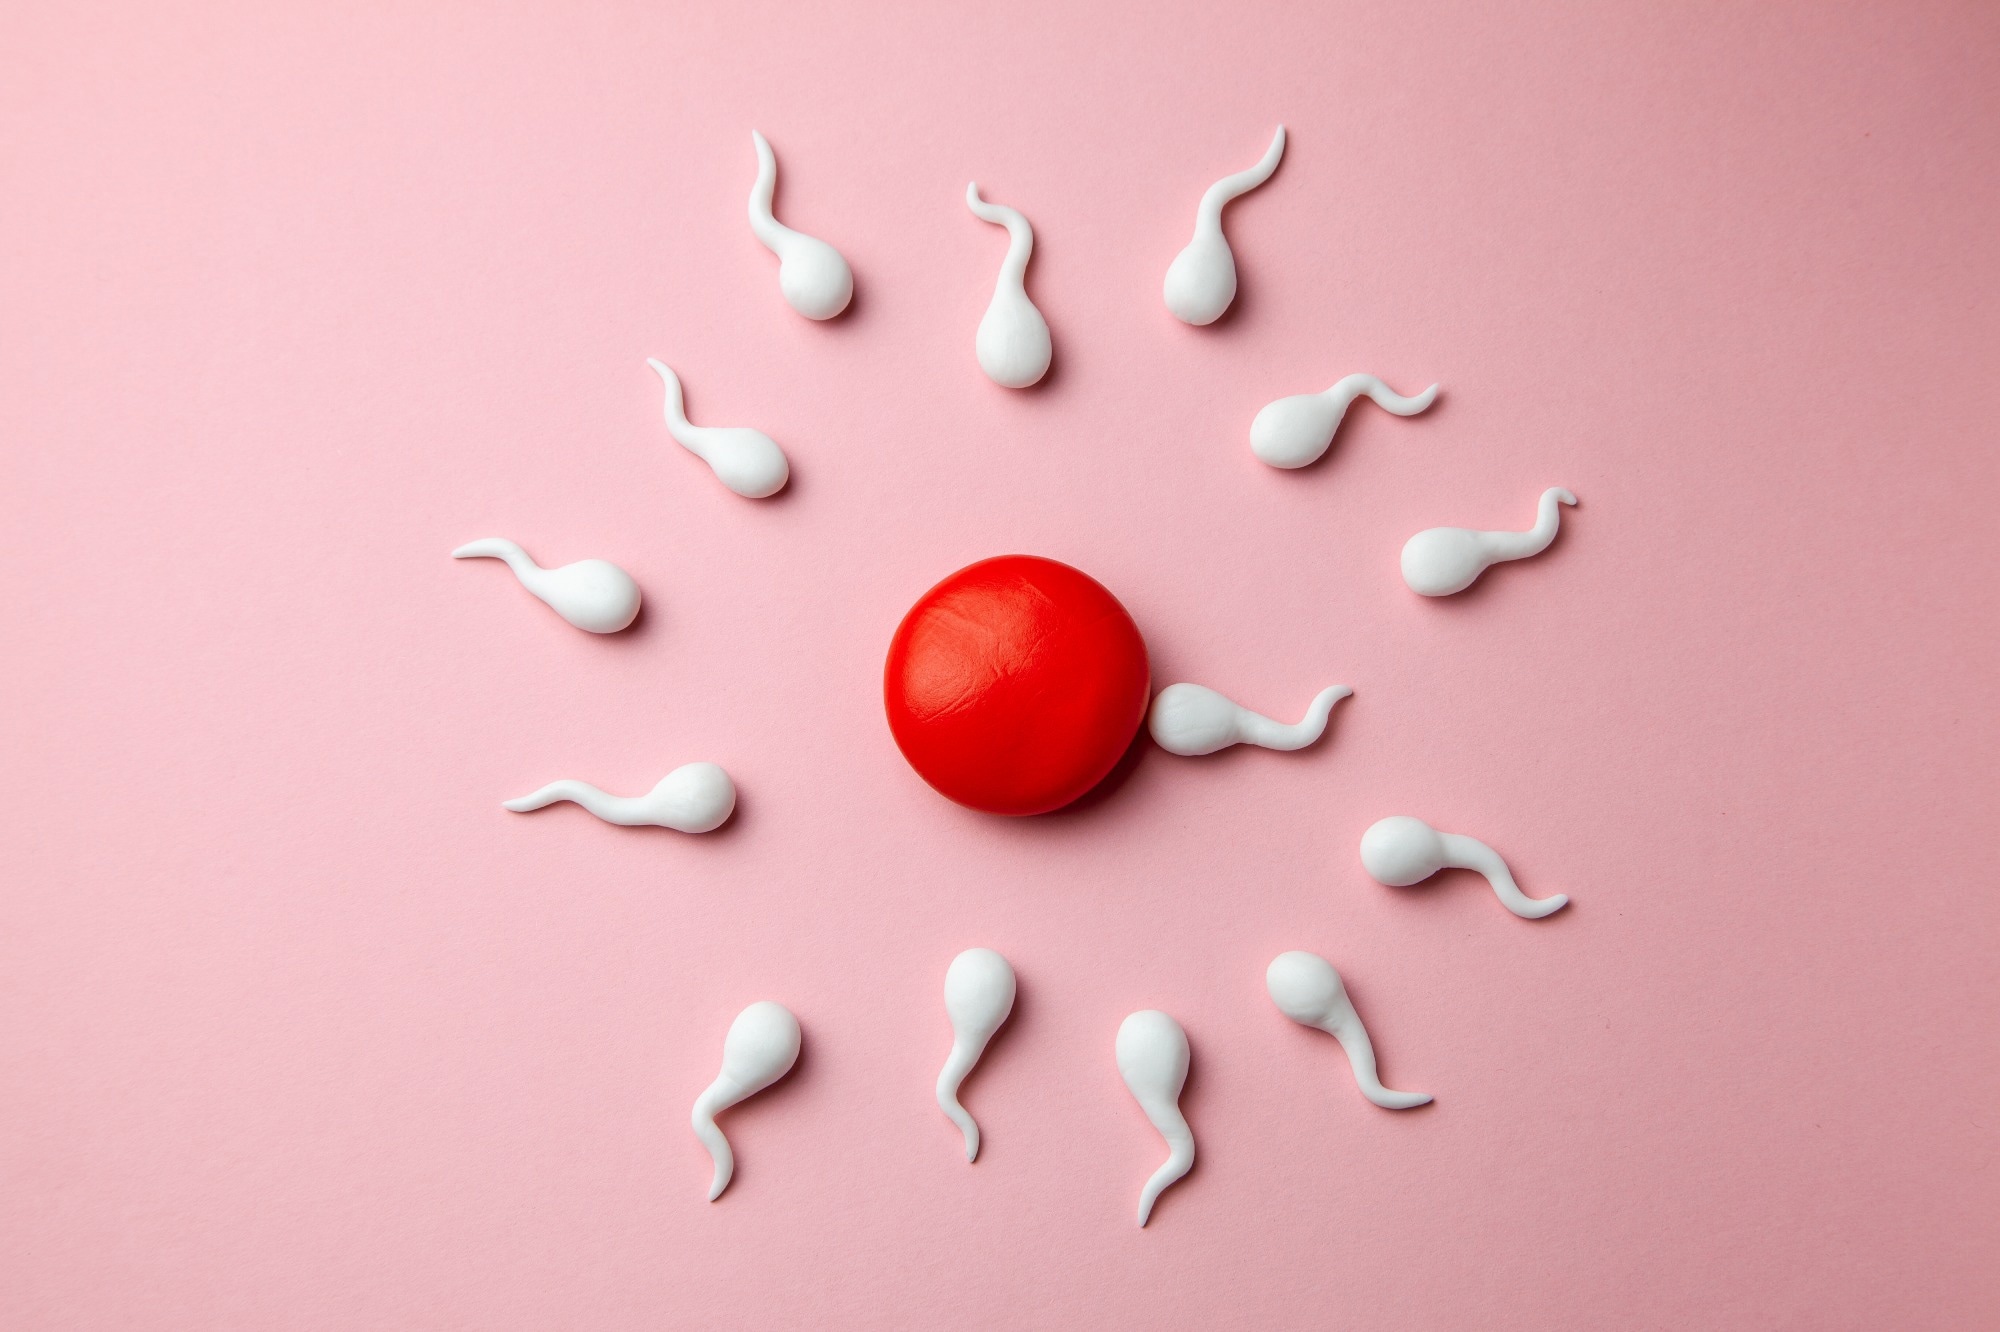 Un estudio investiga la relación entre posibles sustancias químicas que alteran el sistema endocrino y la fertilidad femenina